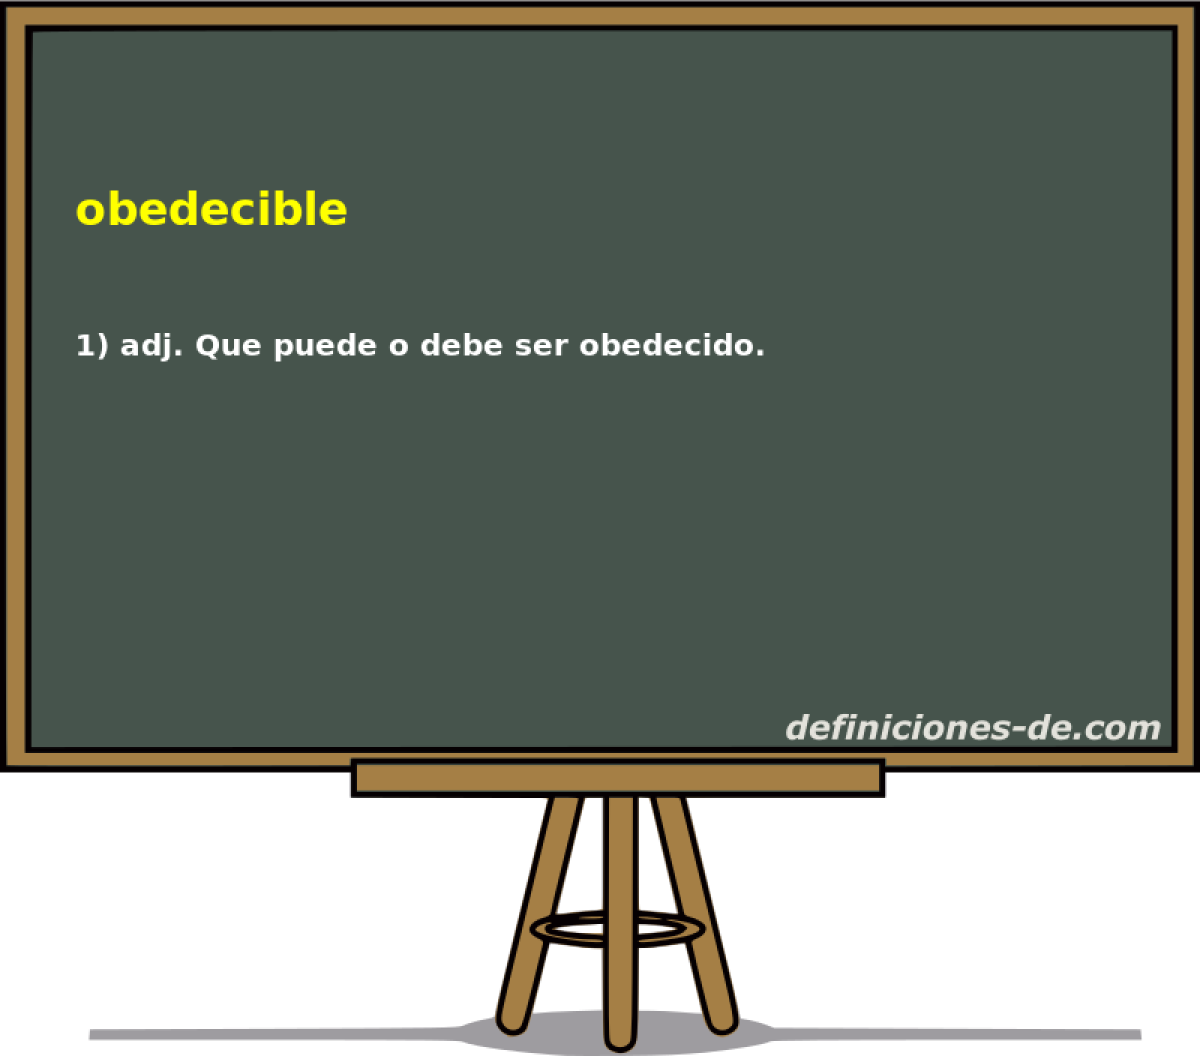 obedecible 